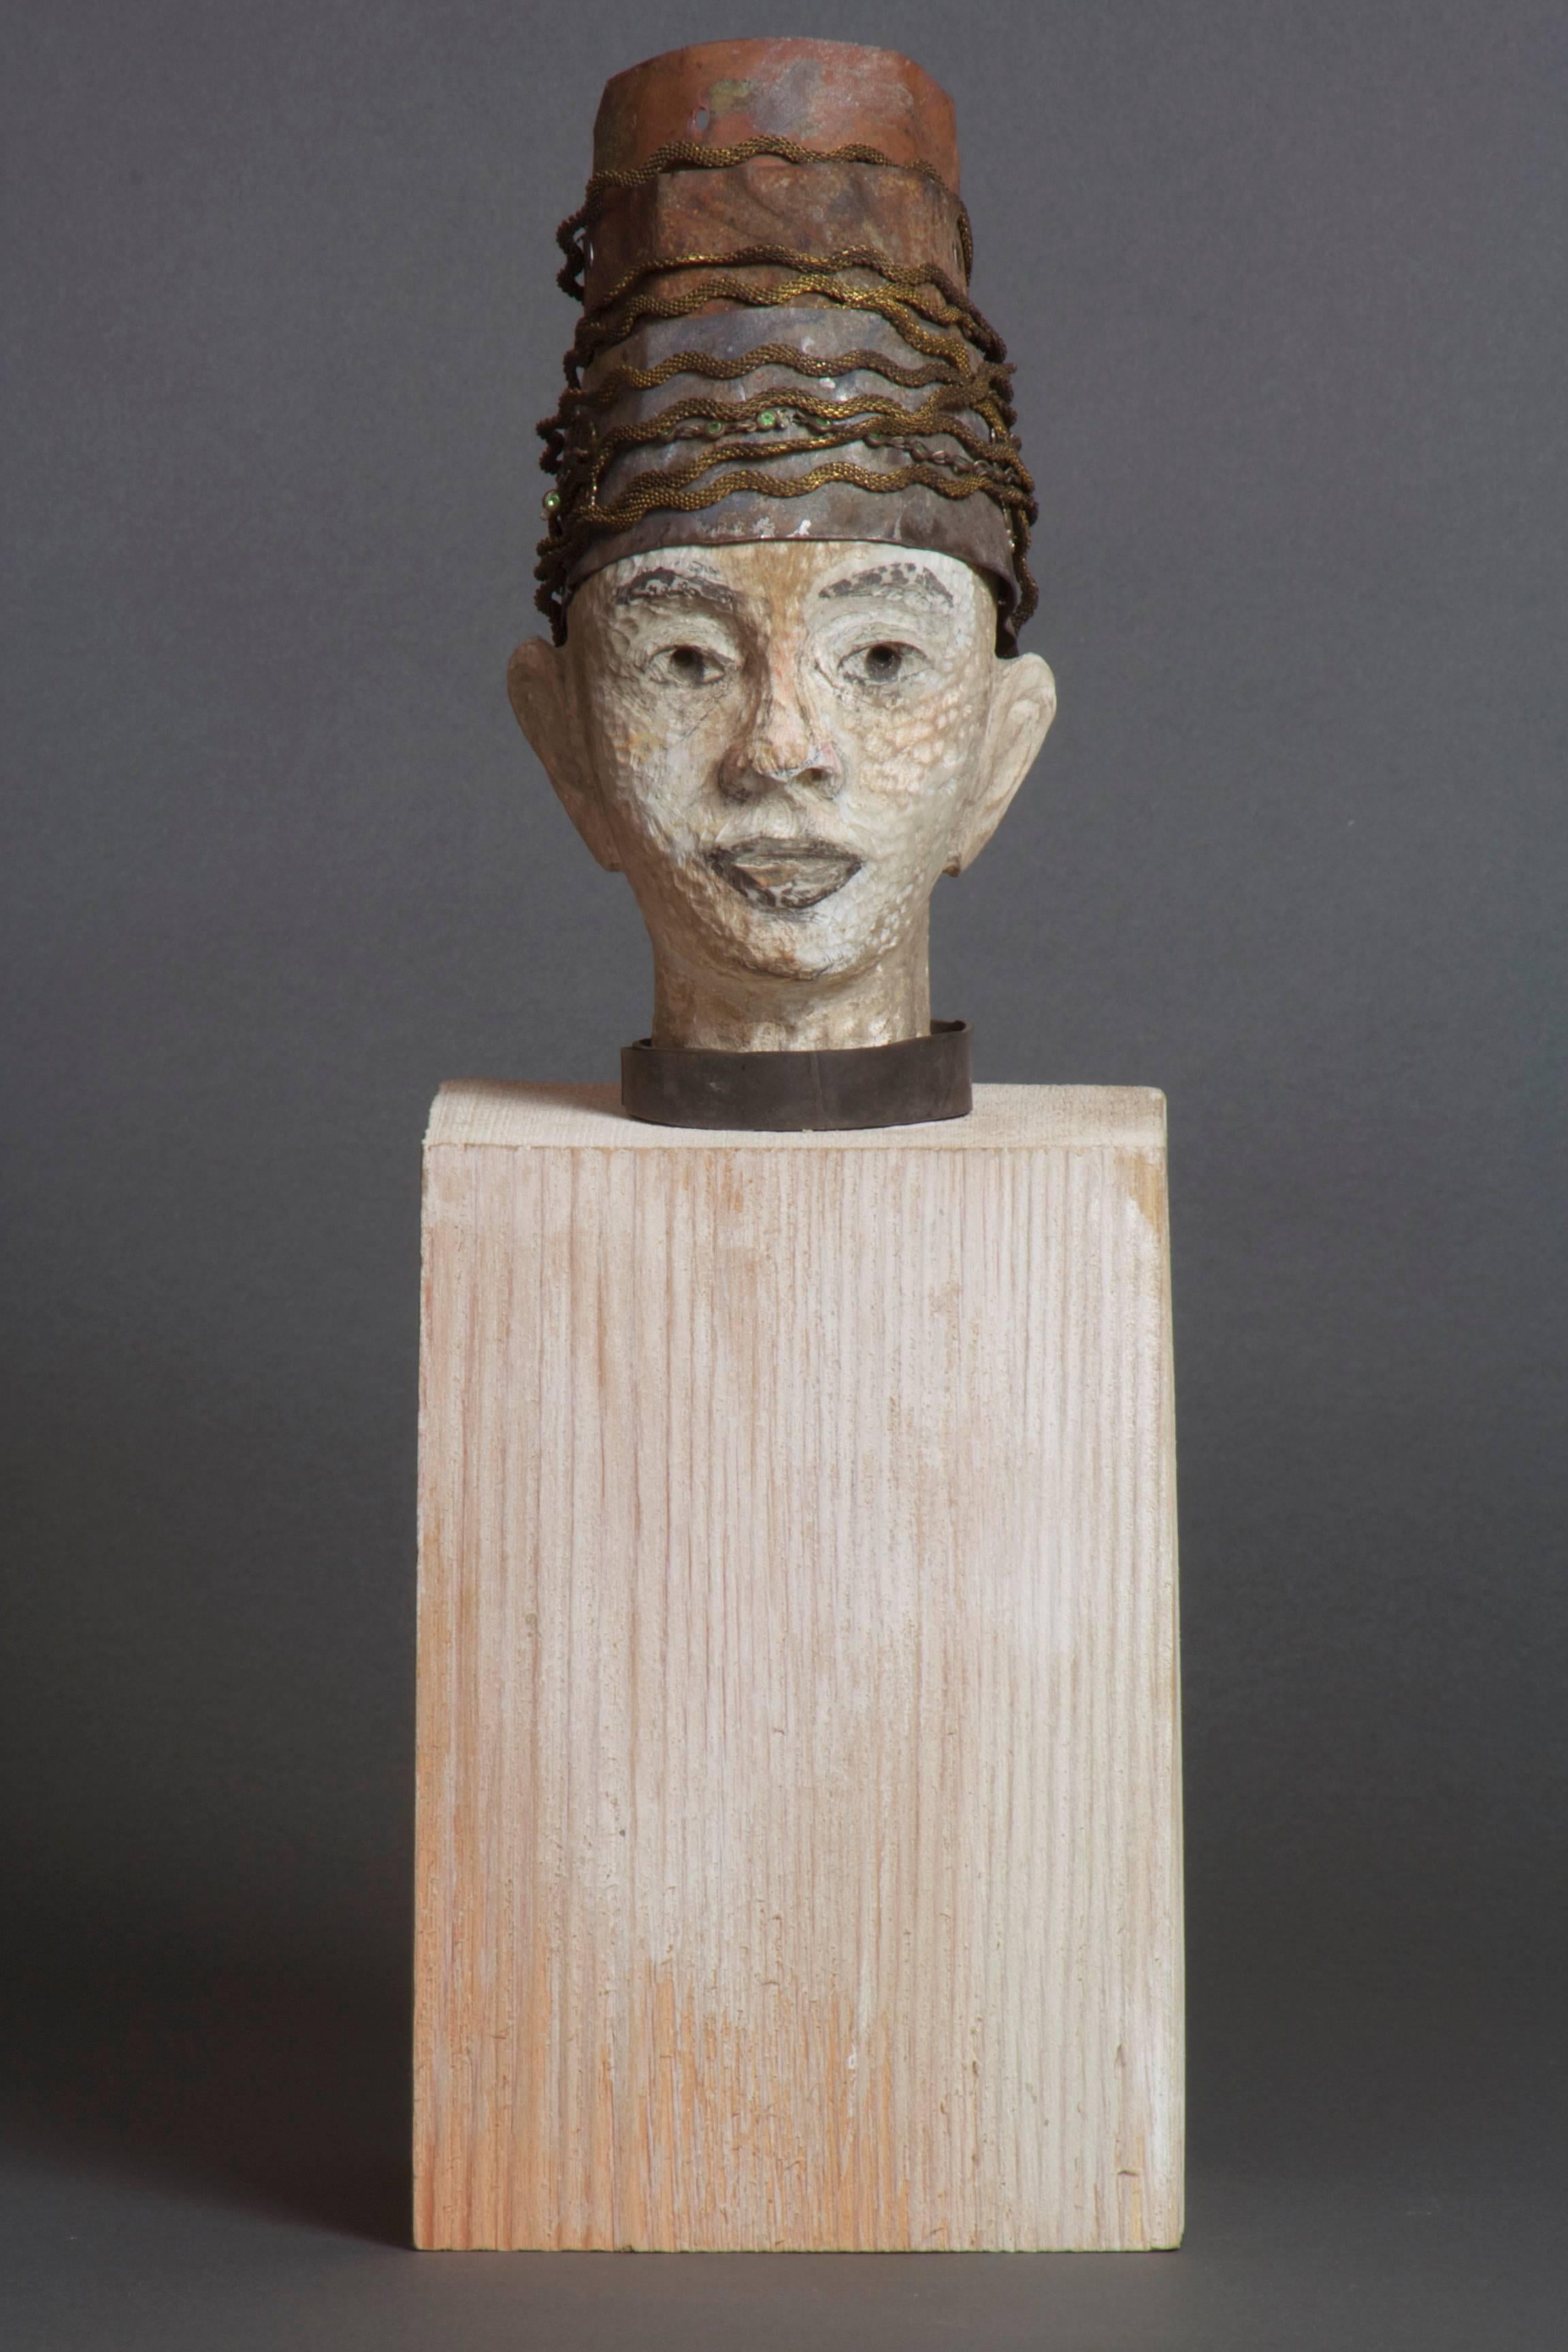 Joe Brubaker Figurative Sculpture - The Little Prince